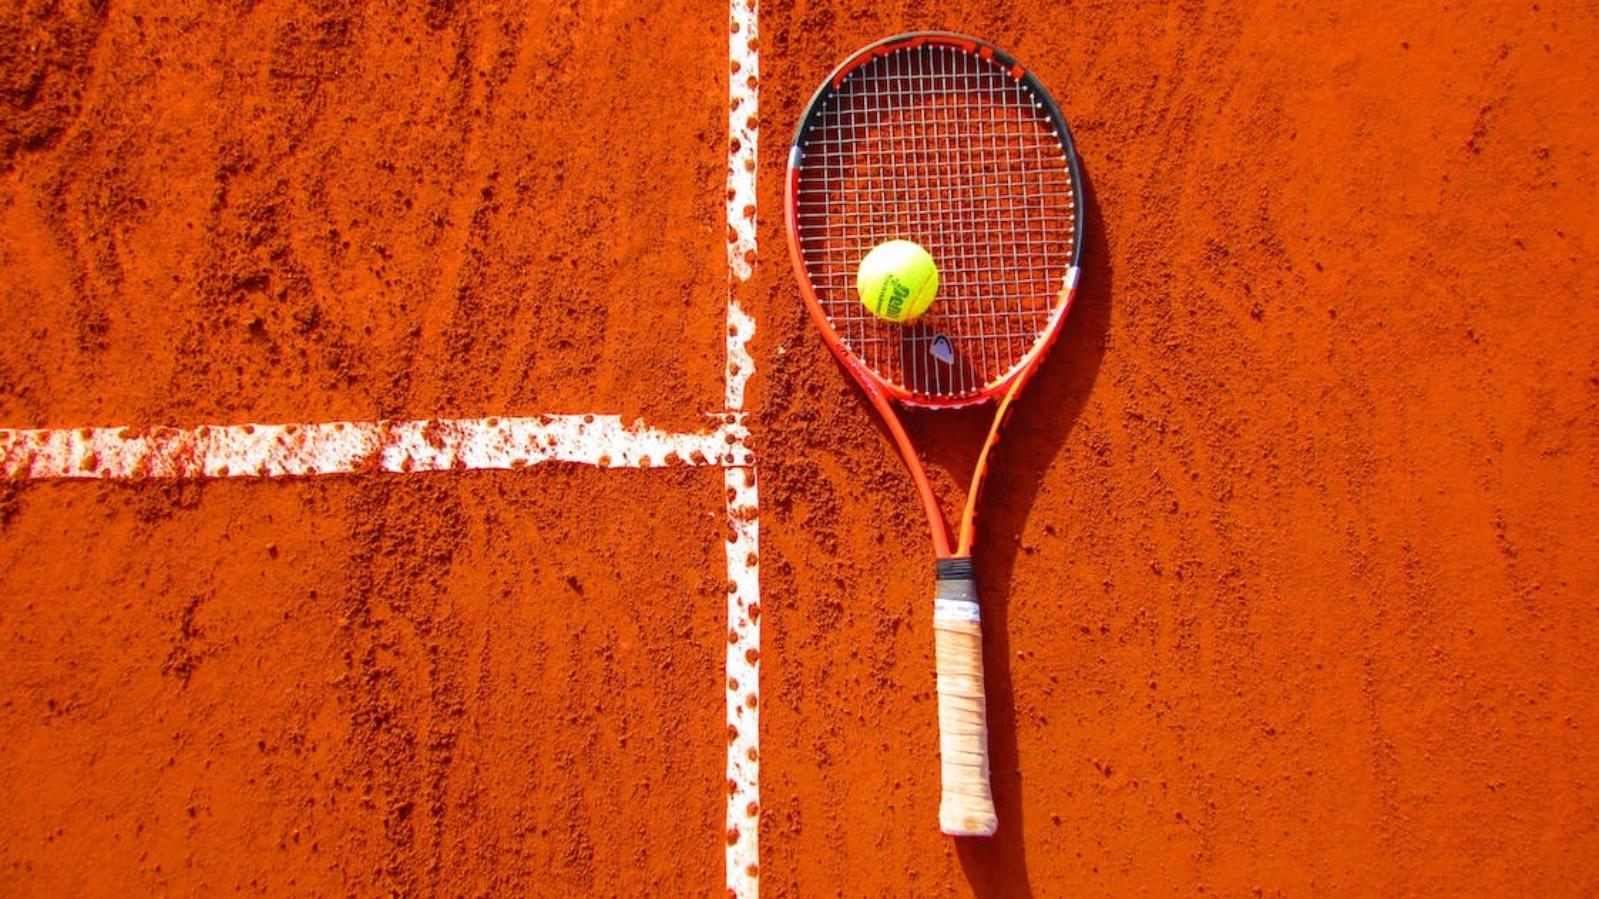 Tennis club Castel Maggiore - foto generica via Pexels